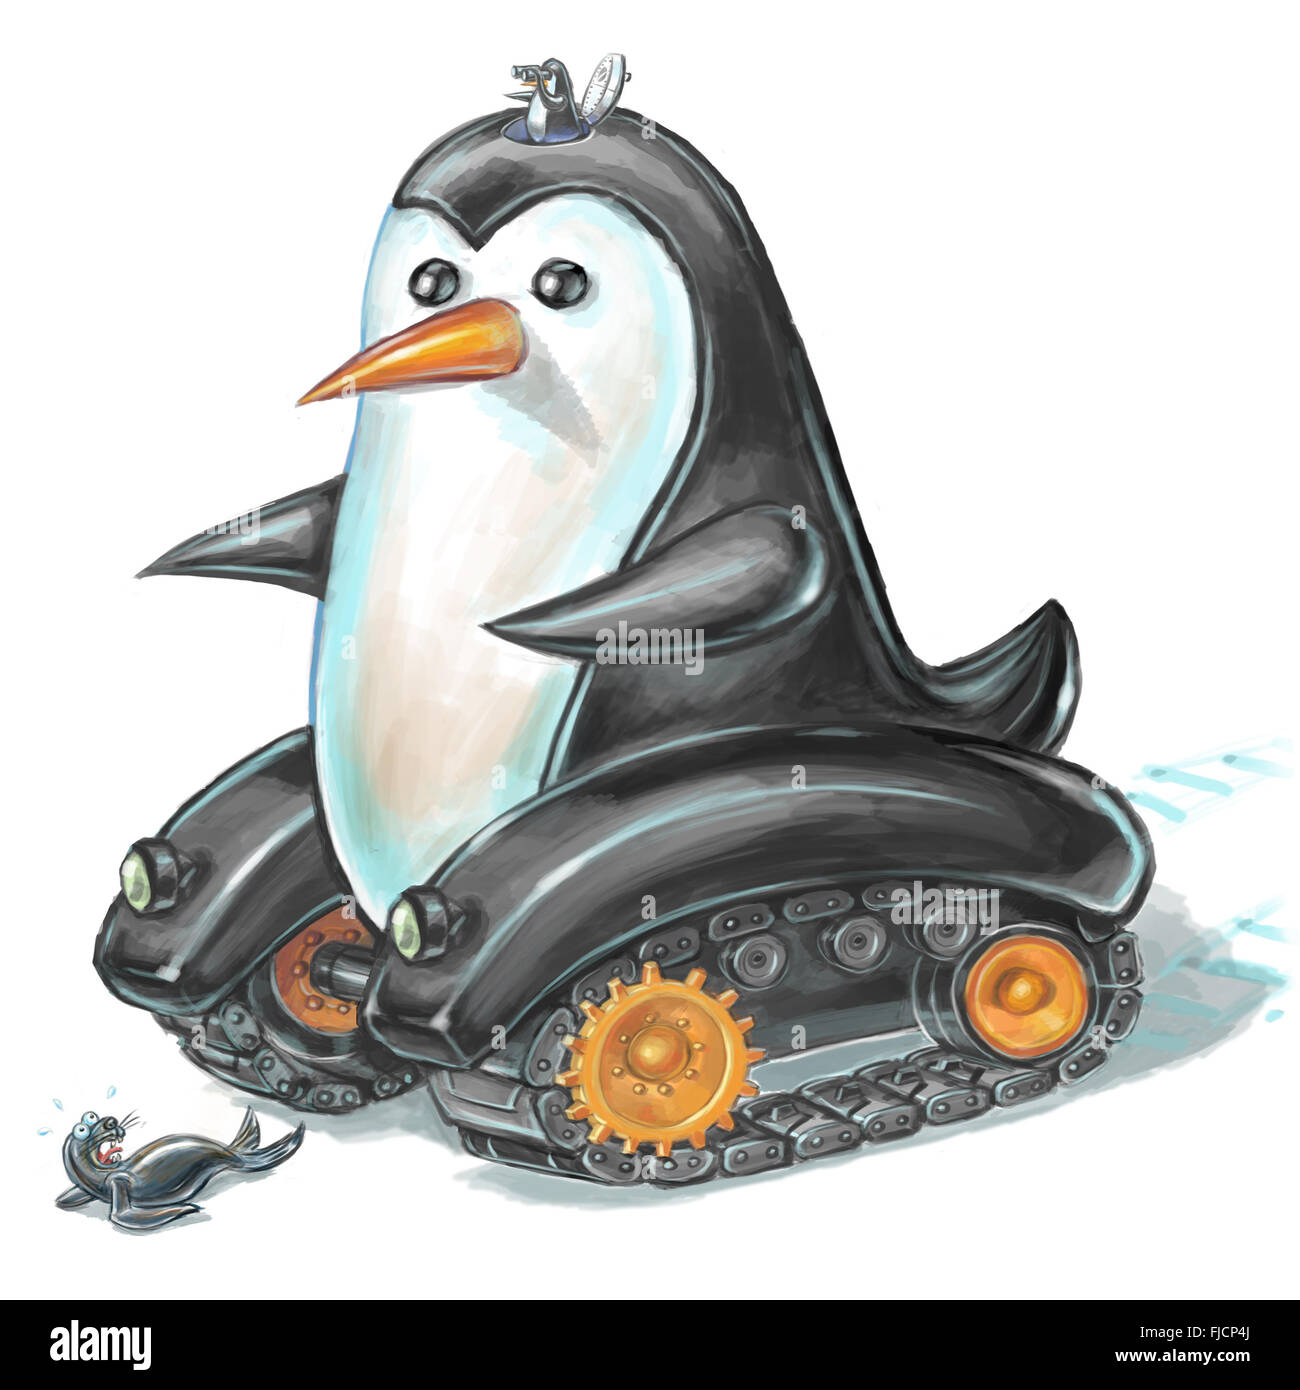 Ilustración de dibujos animados de un pingüino depósito rodando hacia un miedo lobo de mar o la junta. Foto de stock